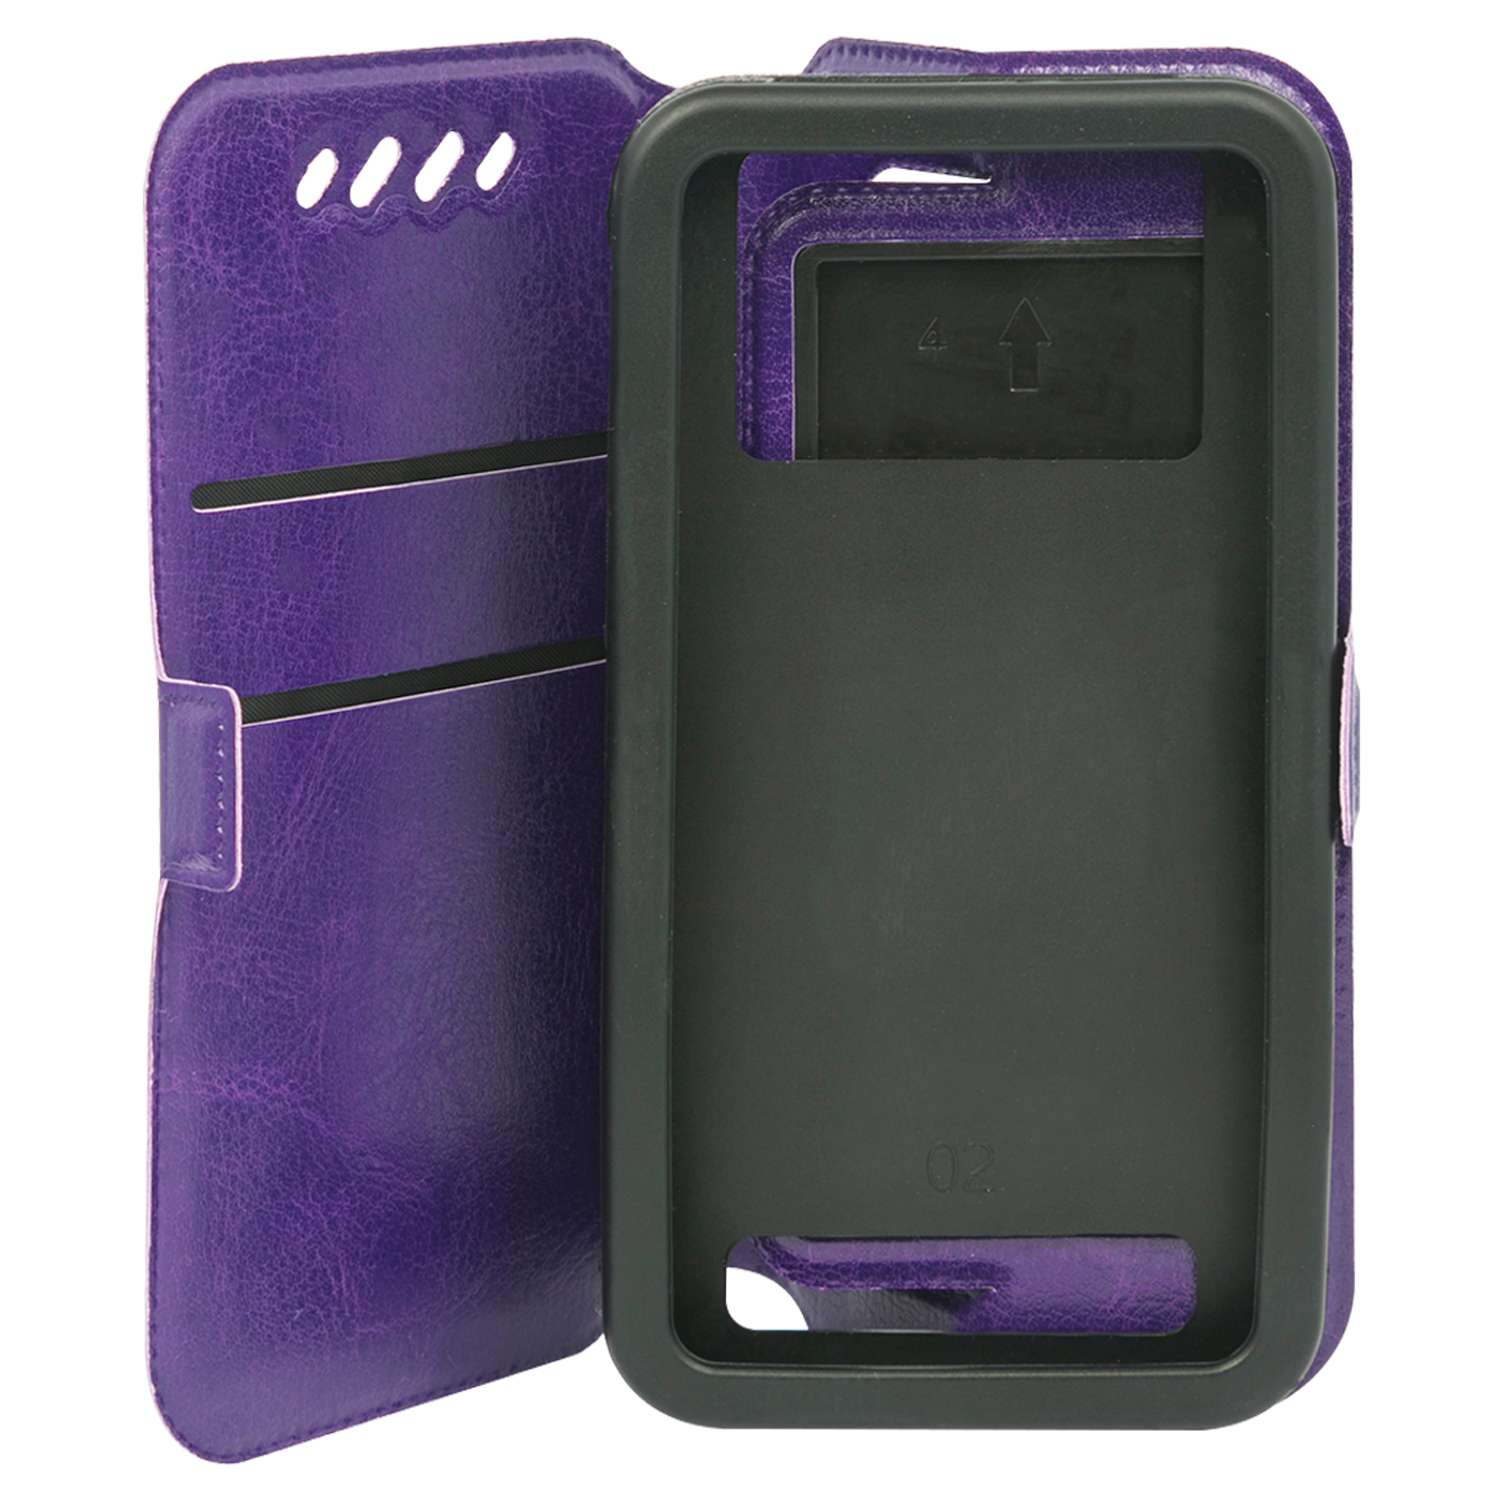 Чехол универсальный iBox Universal Slide для телефонов 3.5-4.2 дюйма фиолетовый - фото 1